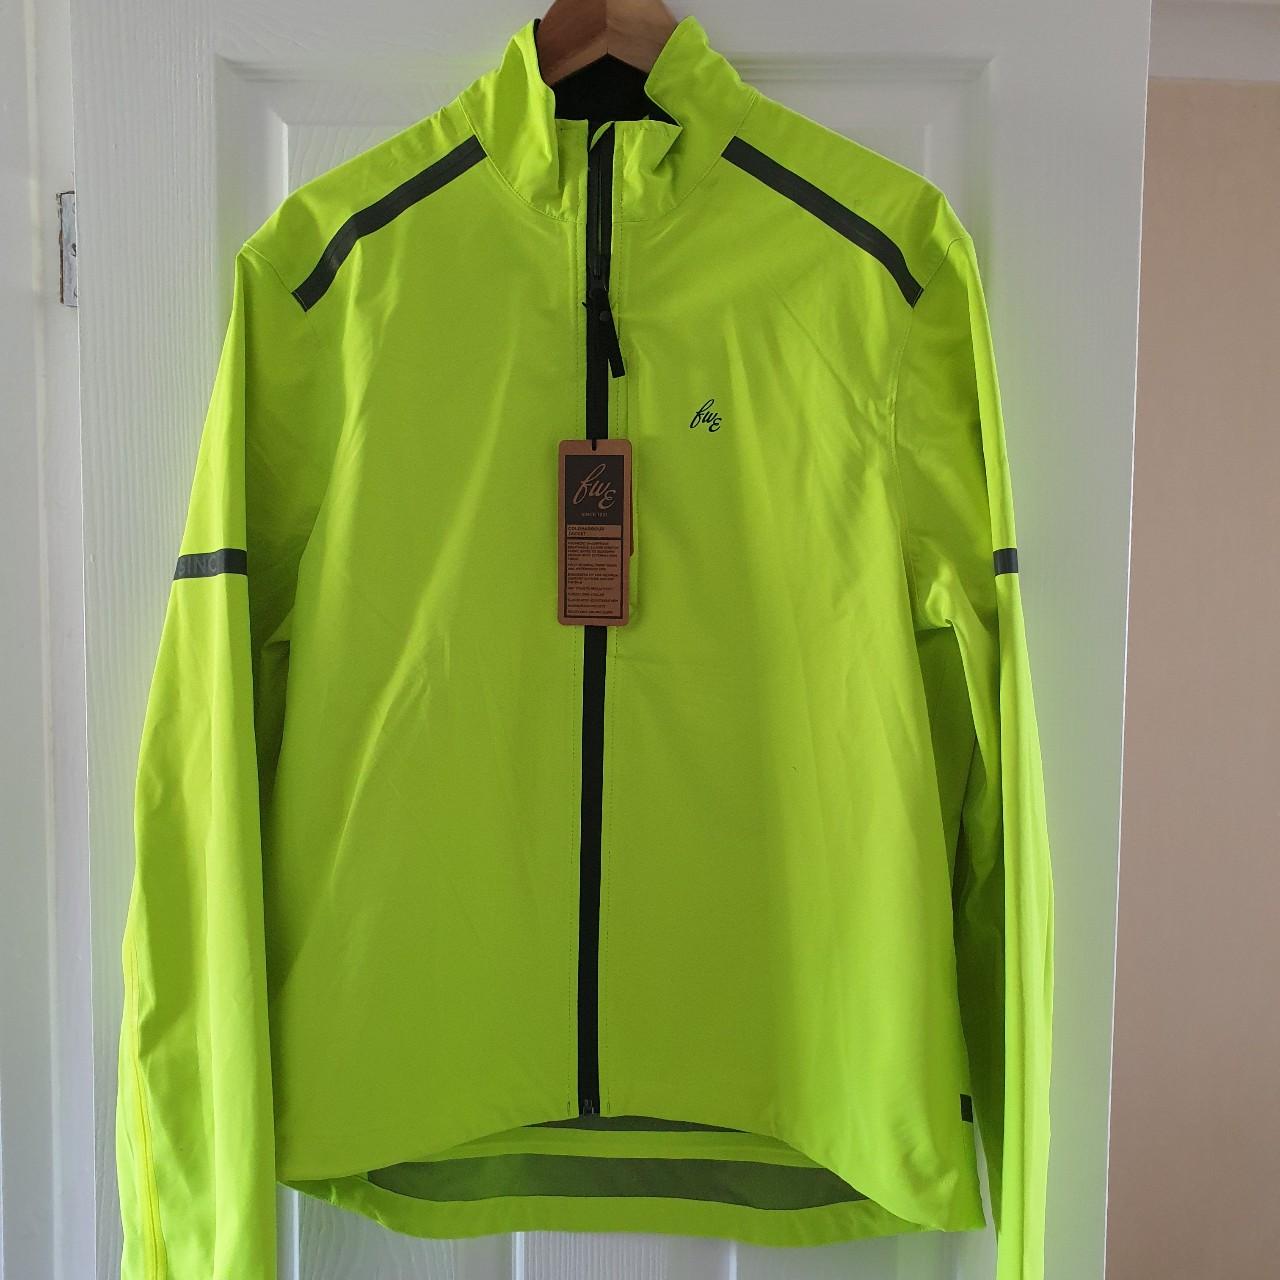 BNWT, FWE waterproof cycling jacket in a large... - Depop